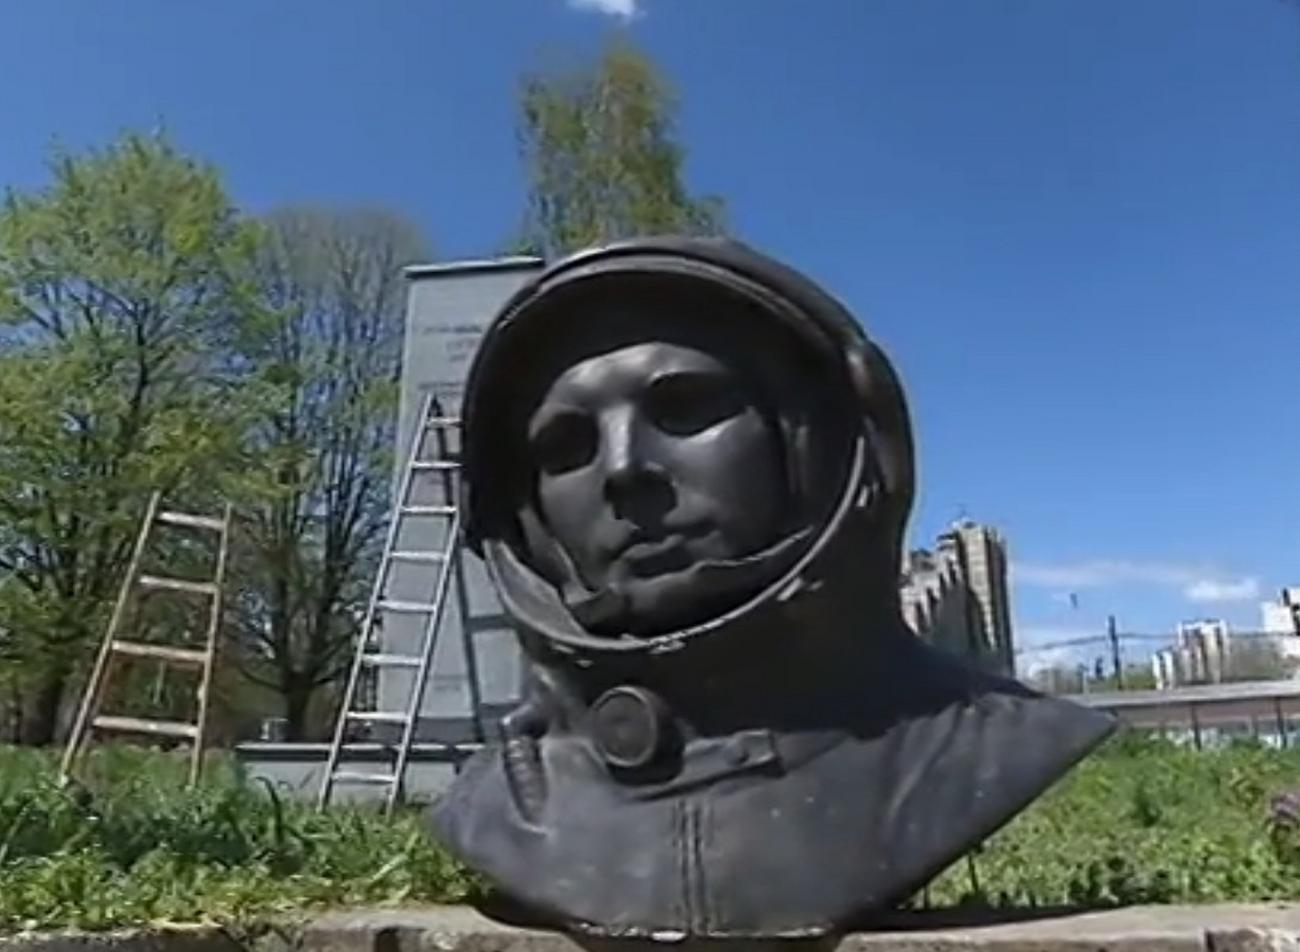 Памятник космонавту Юрию Гагарину